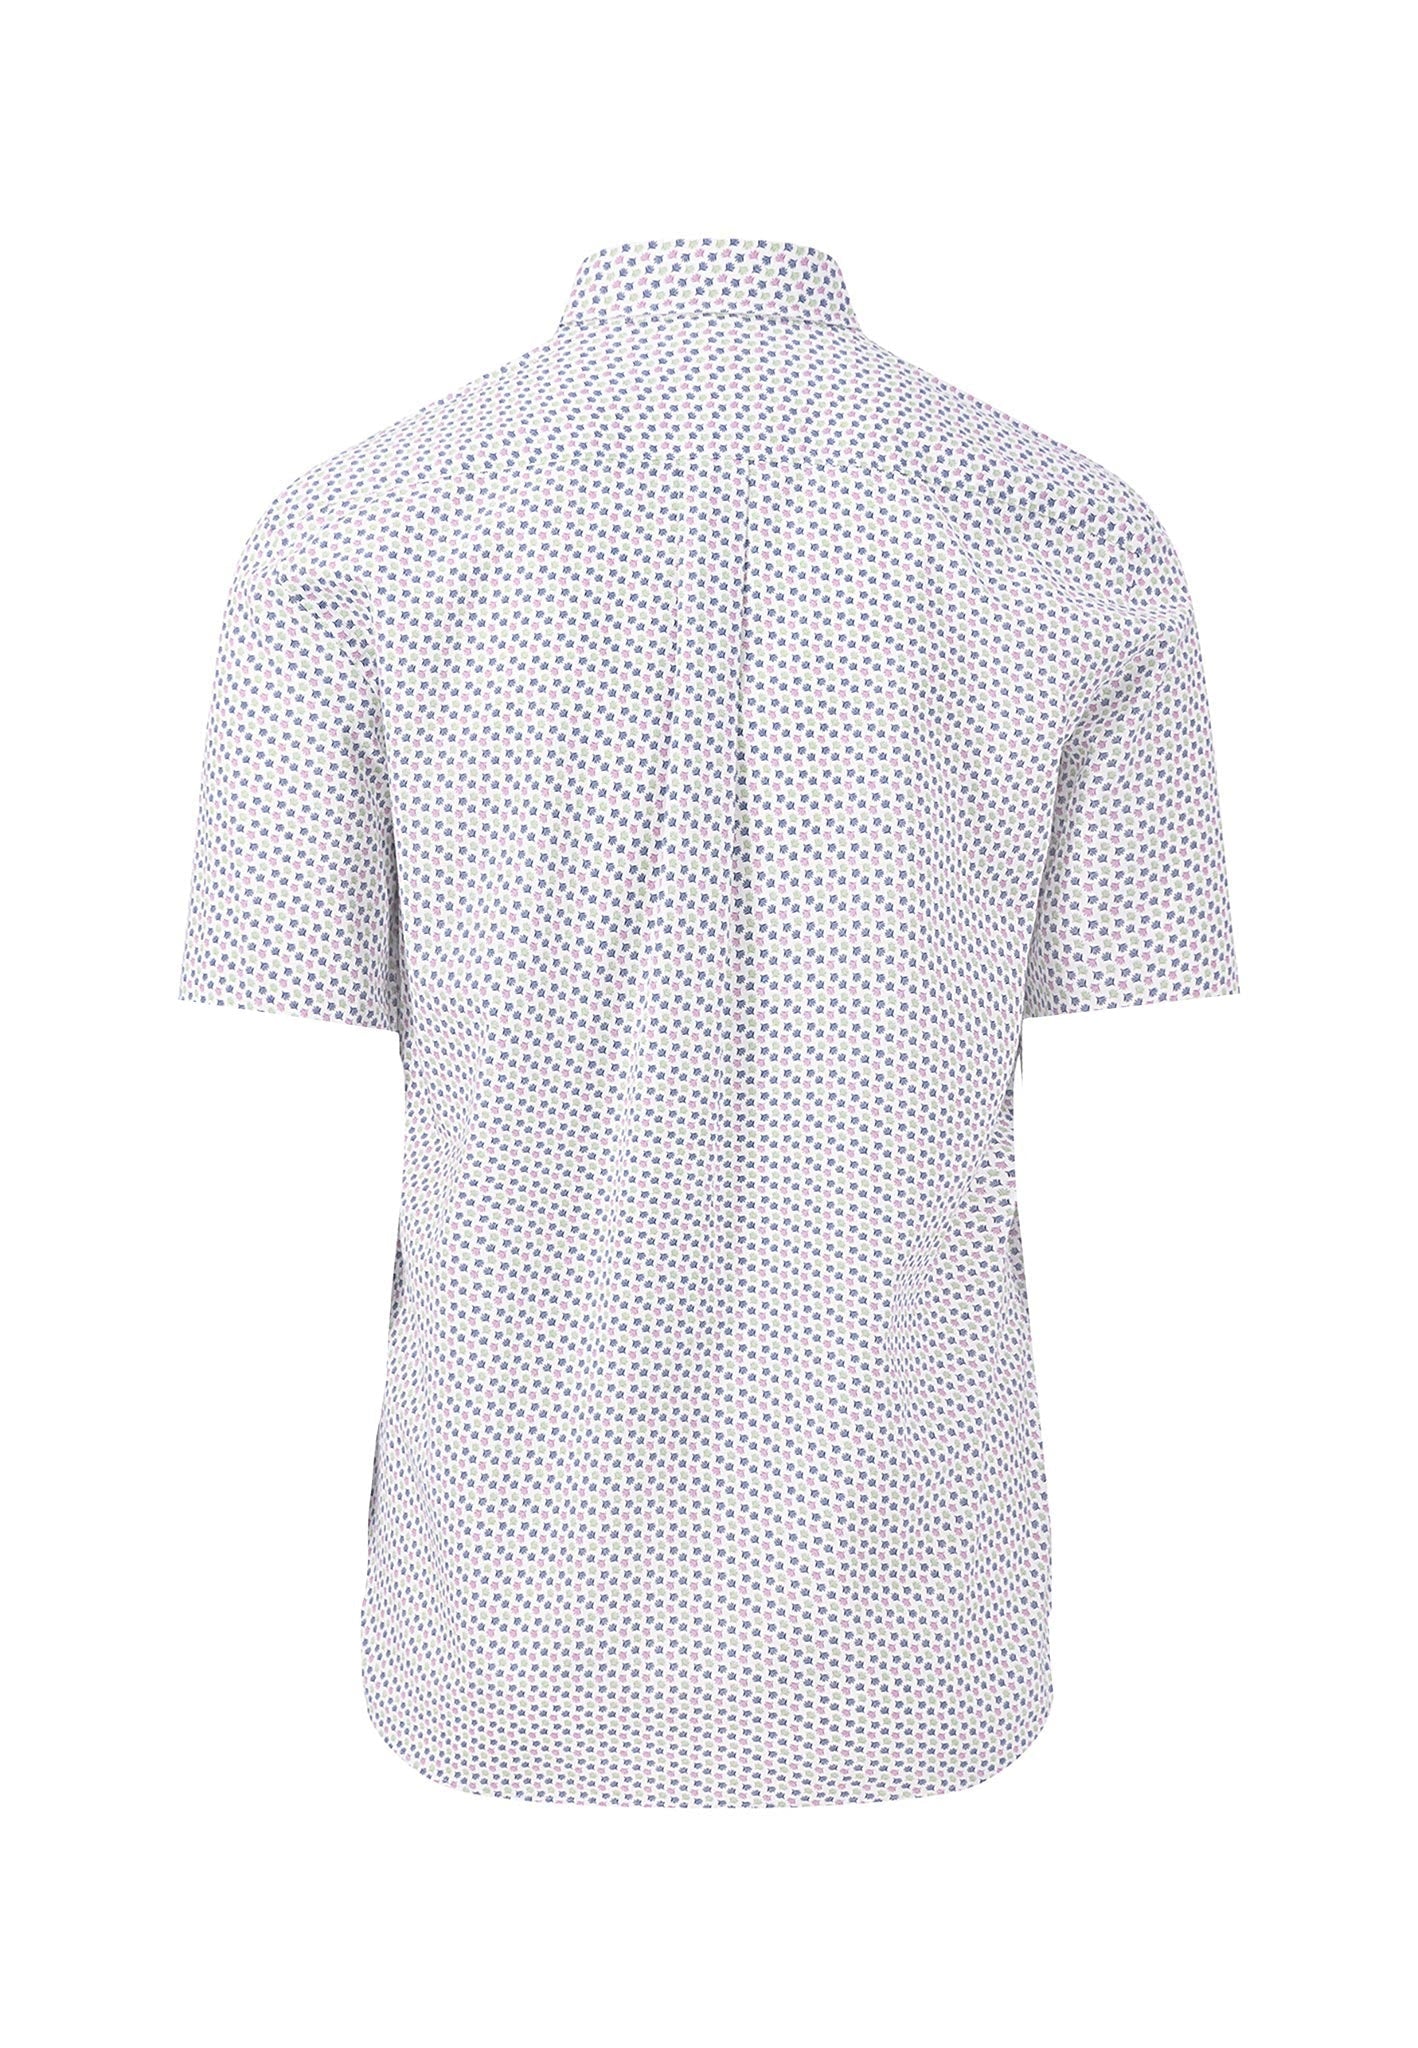 Fynch Hatton Short Sleeved Shirt - Summer Breeze